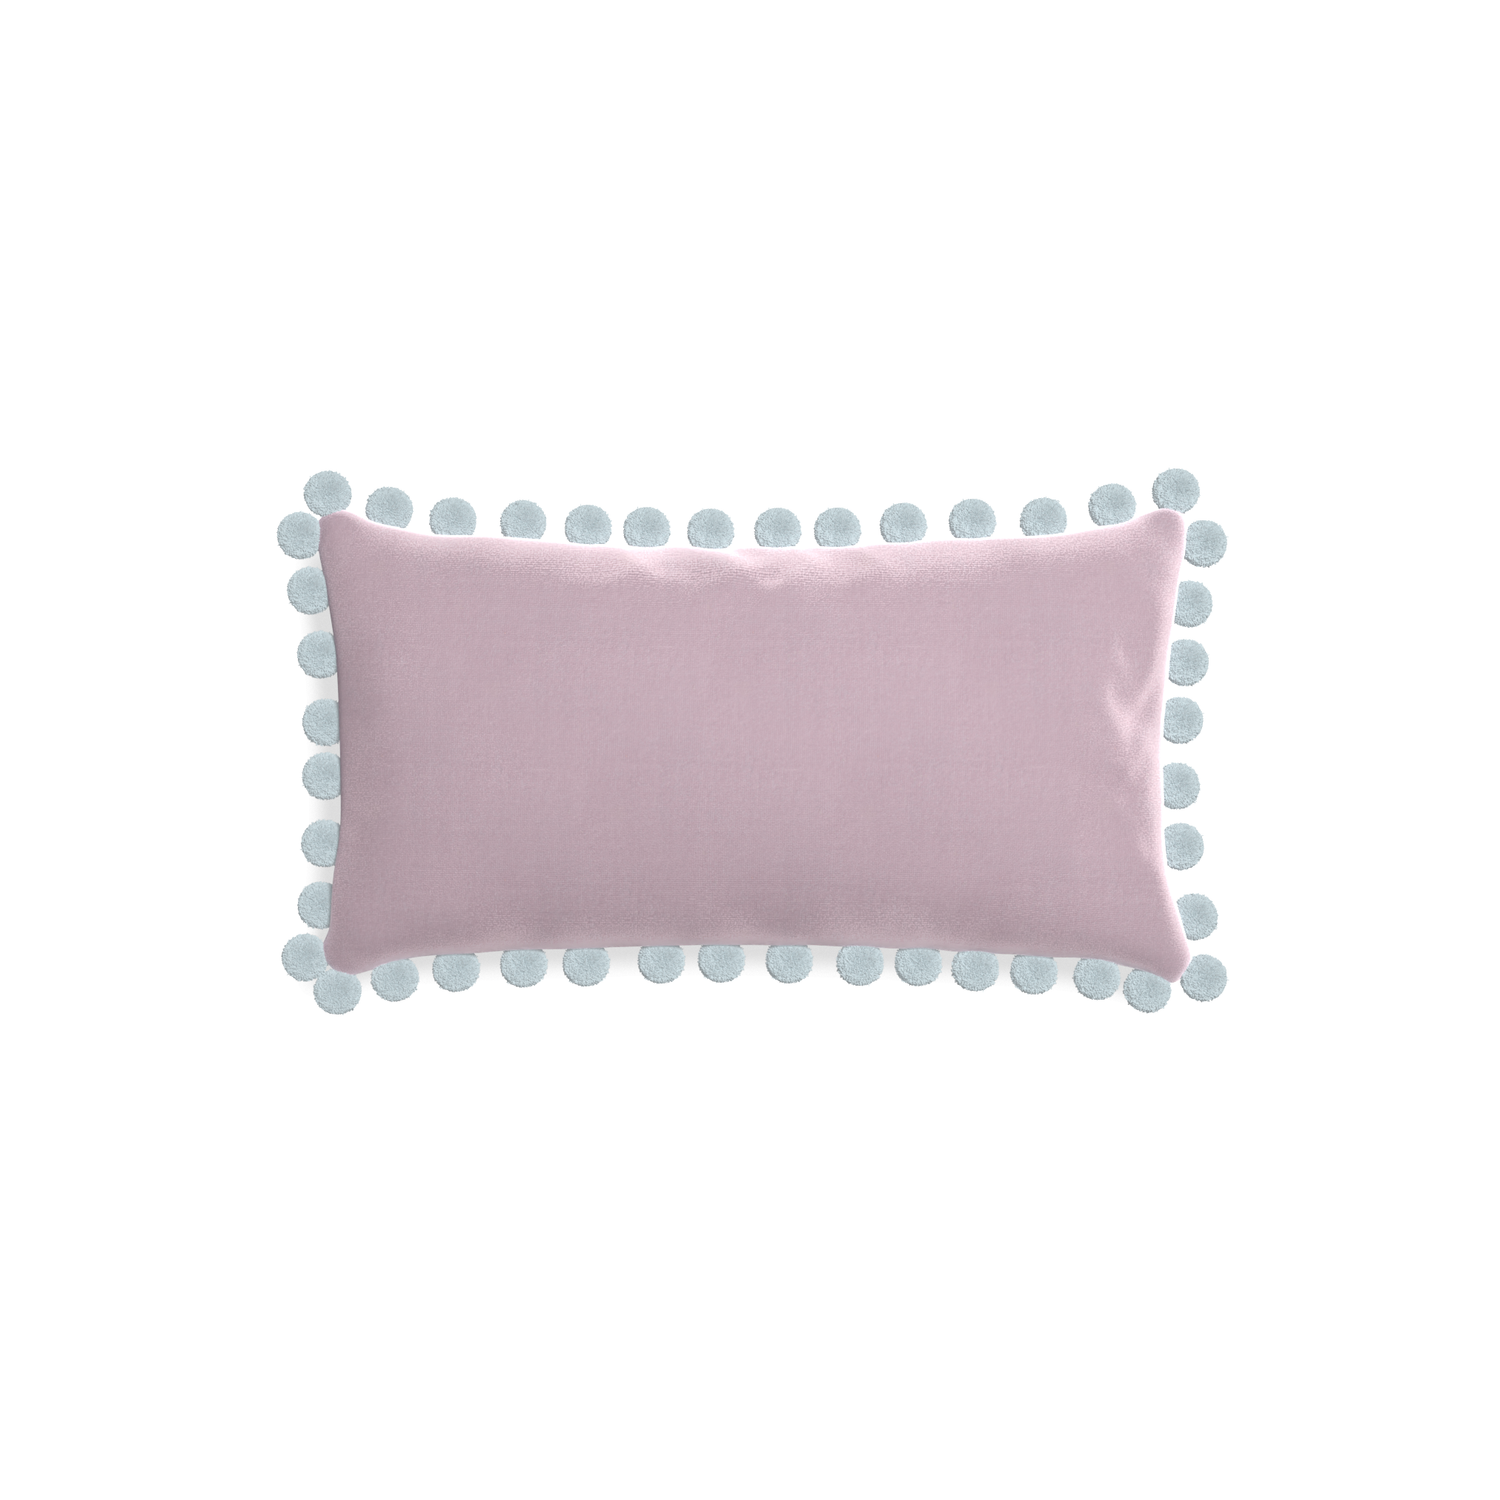 rectangle lilac velvet pillow with light blue pom poms